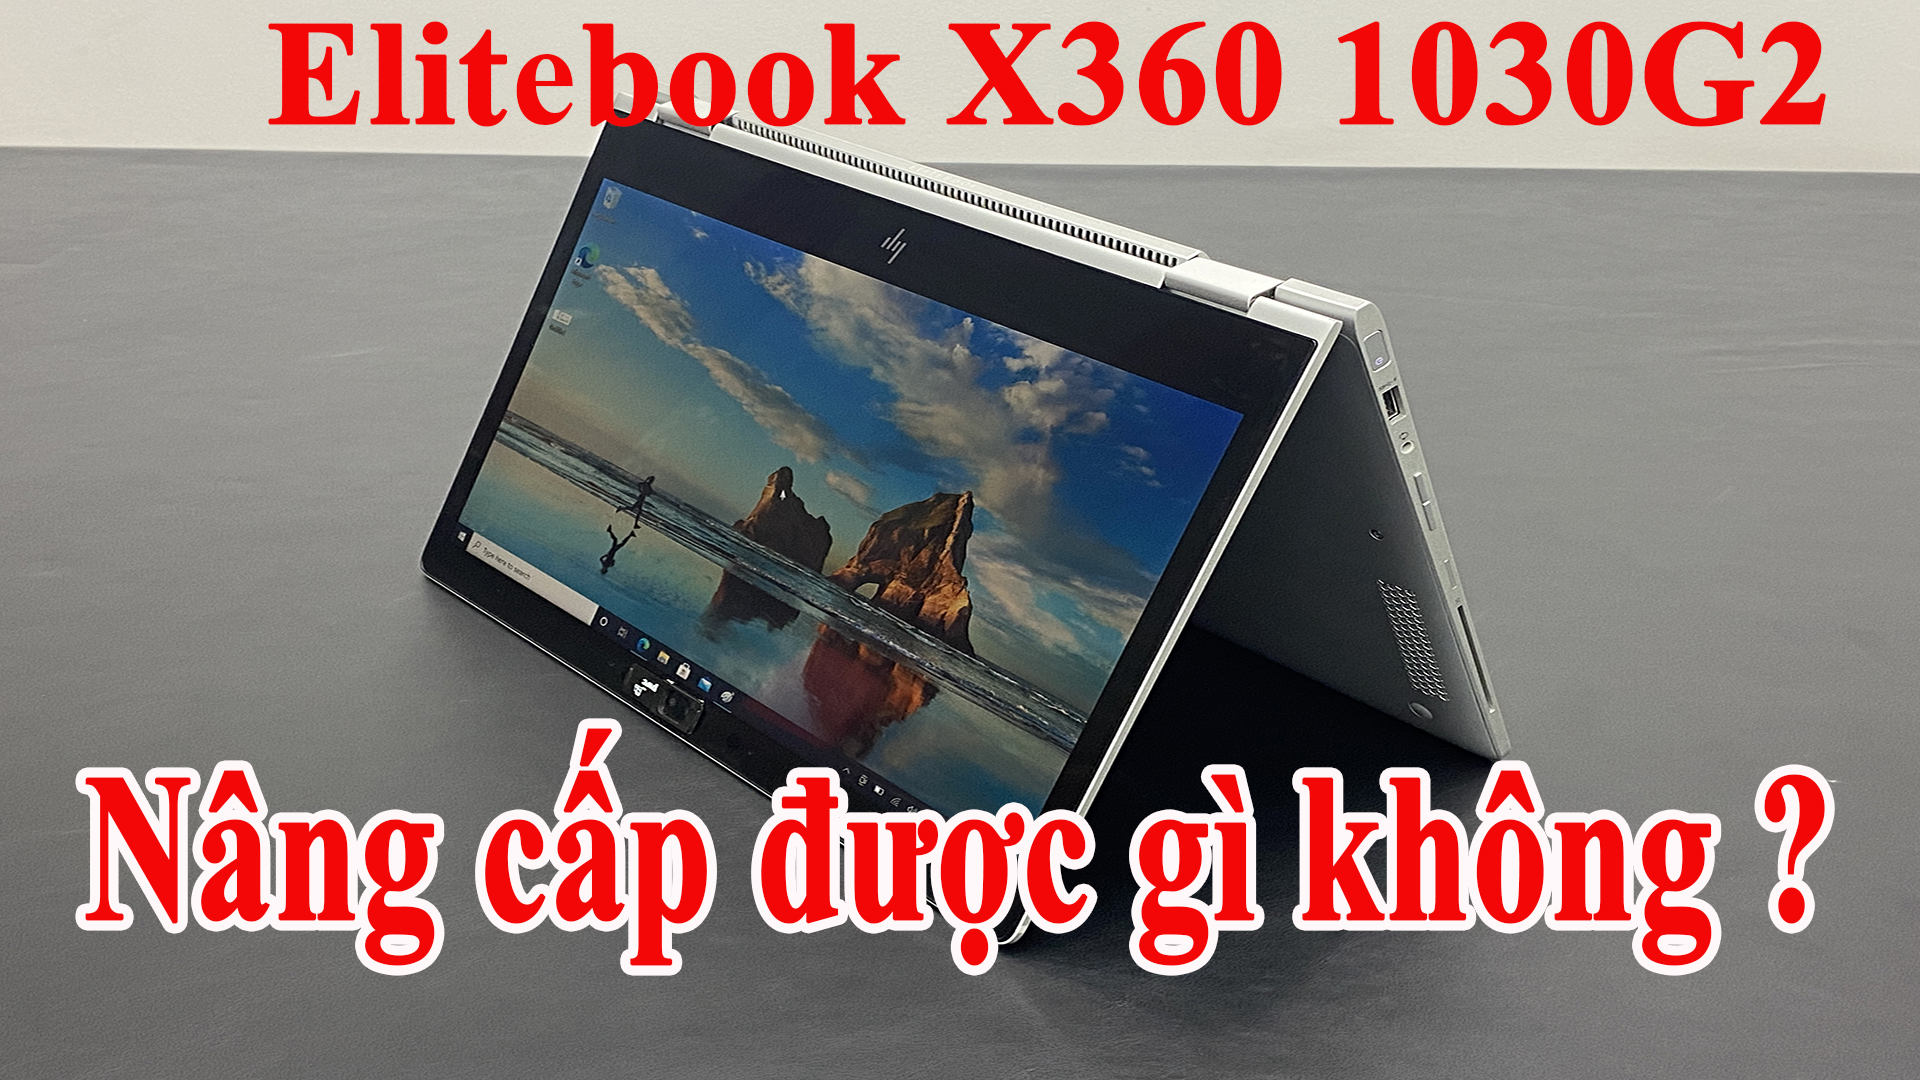 HP Elitebook X360 1030G2 thì nâng cấp được cái gì ?